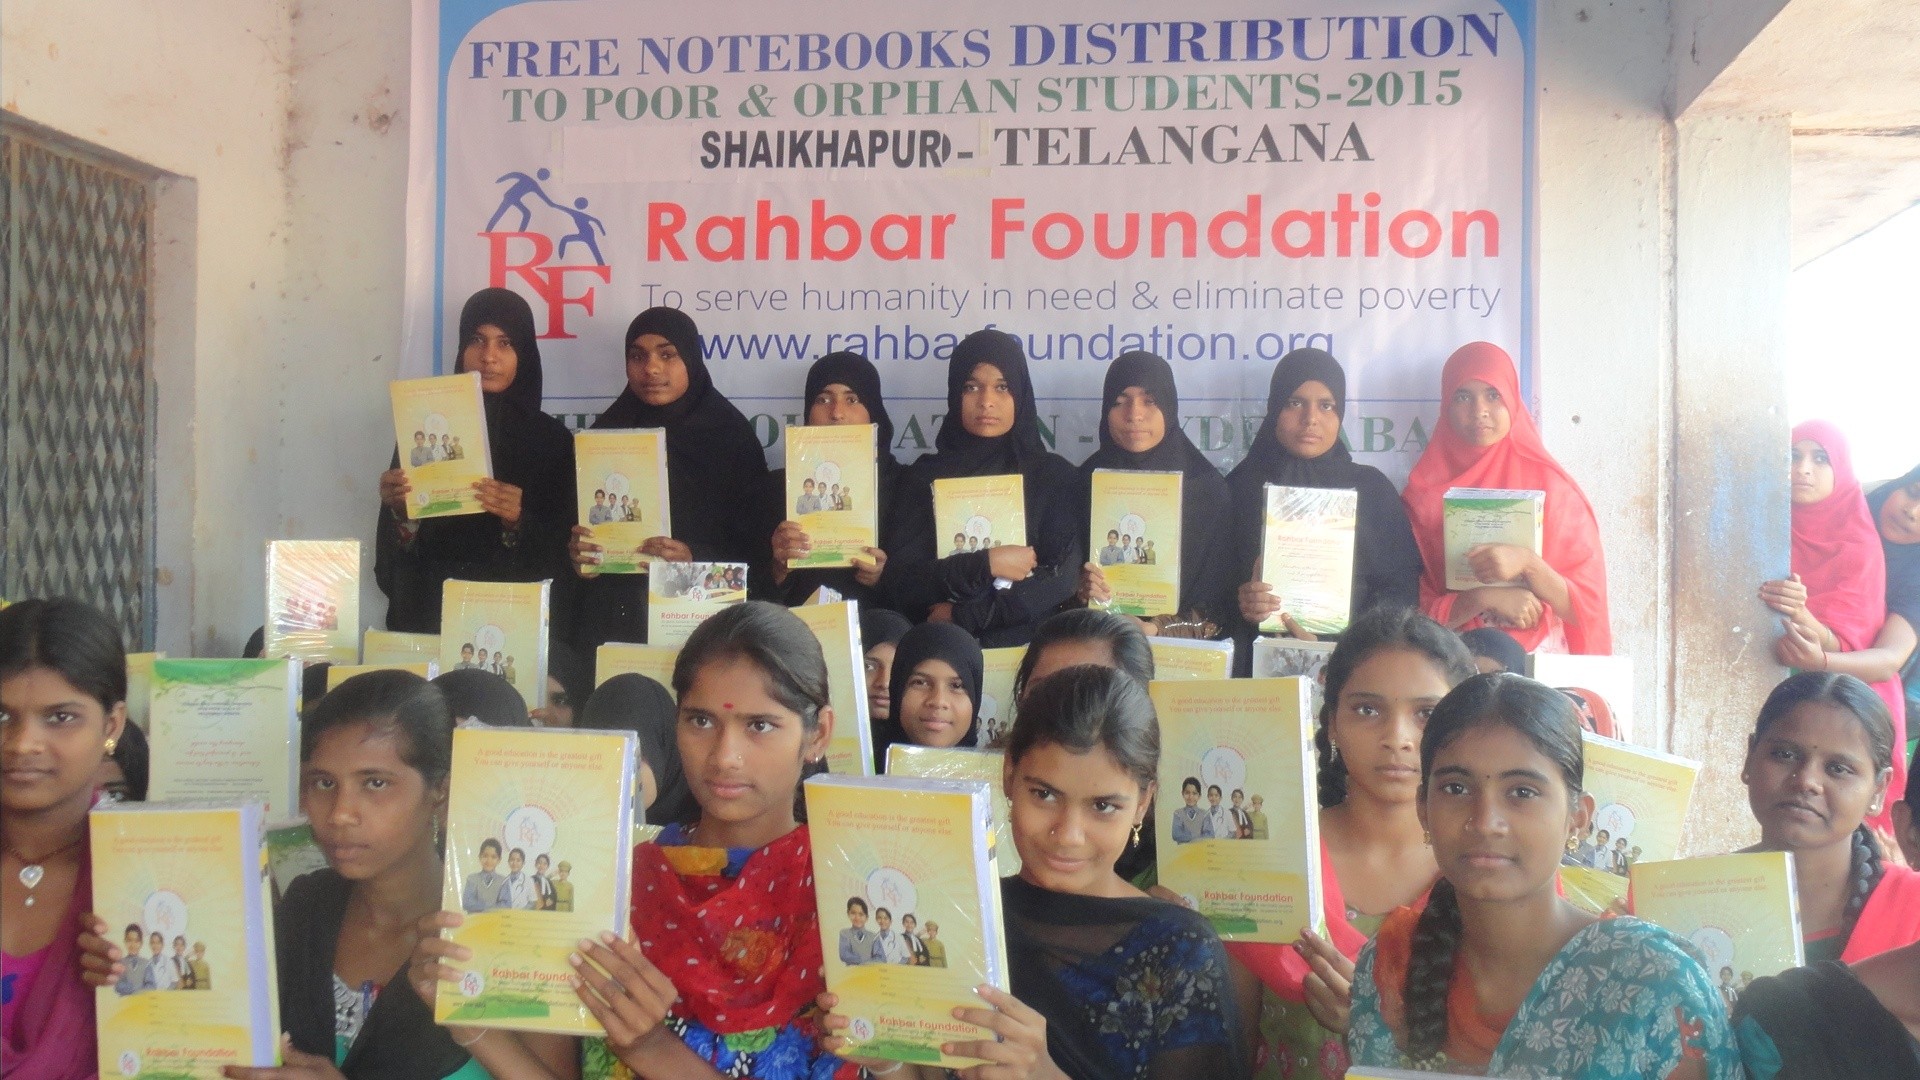 Free Notebooks distribution at Shaikhapur, Telangana